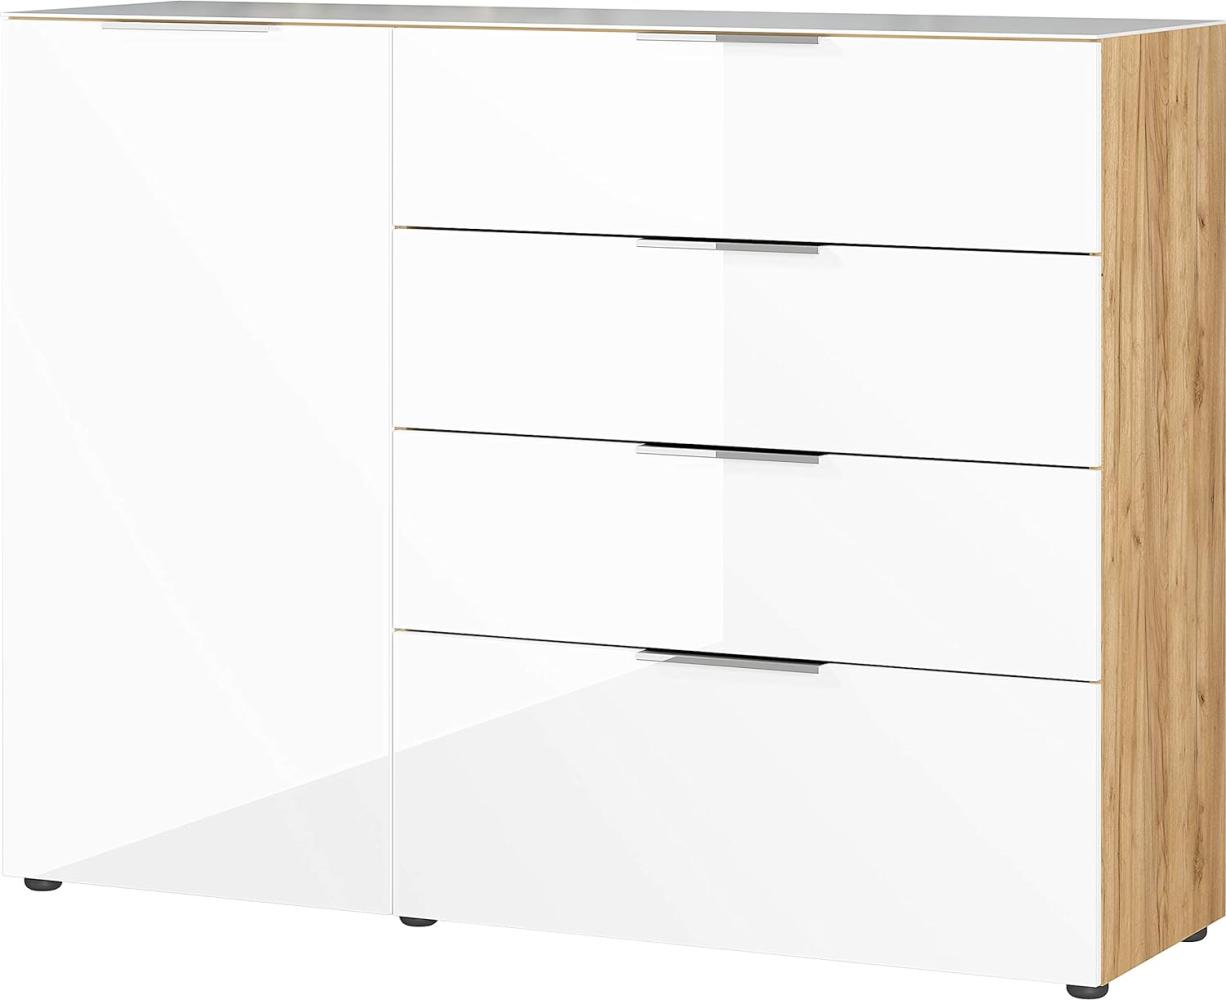 Amazon Marke - Alkove Sideboard/Kommode Selencia, in Navarra-Eiche-Nachbildung/Weiß, Fronten und Oberboden mit Glasauflage, mit einer Tür und 4 Schubladen, 134 x 102 x 42 cm (BxHxT) Bild 1